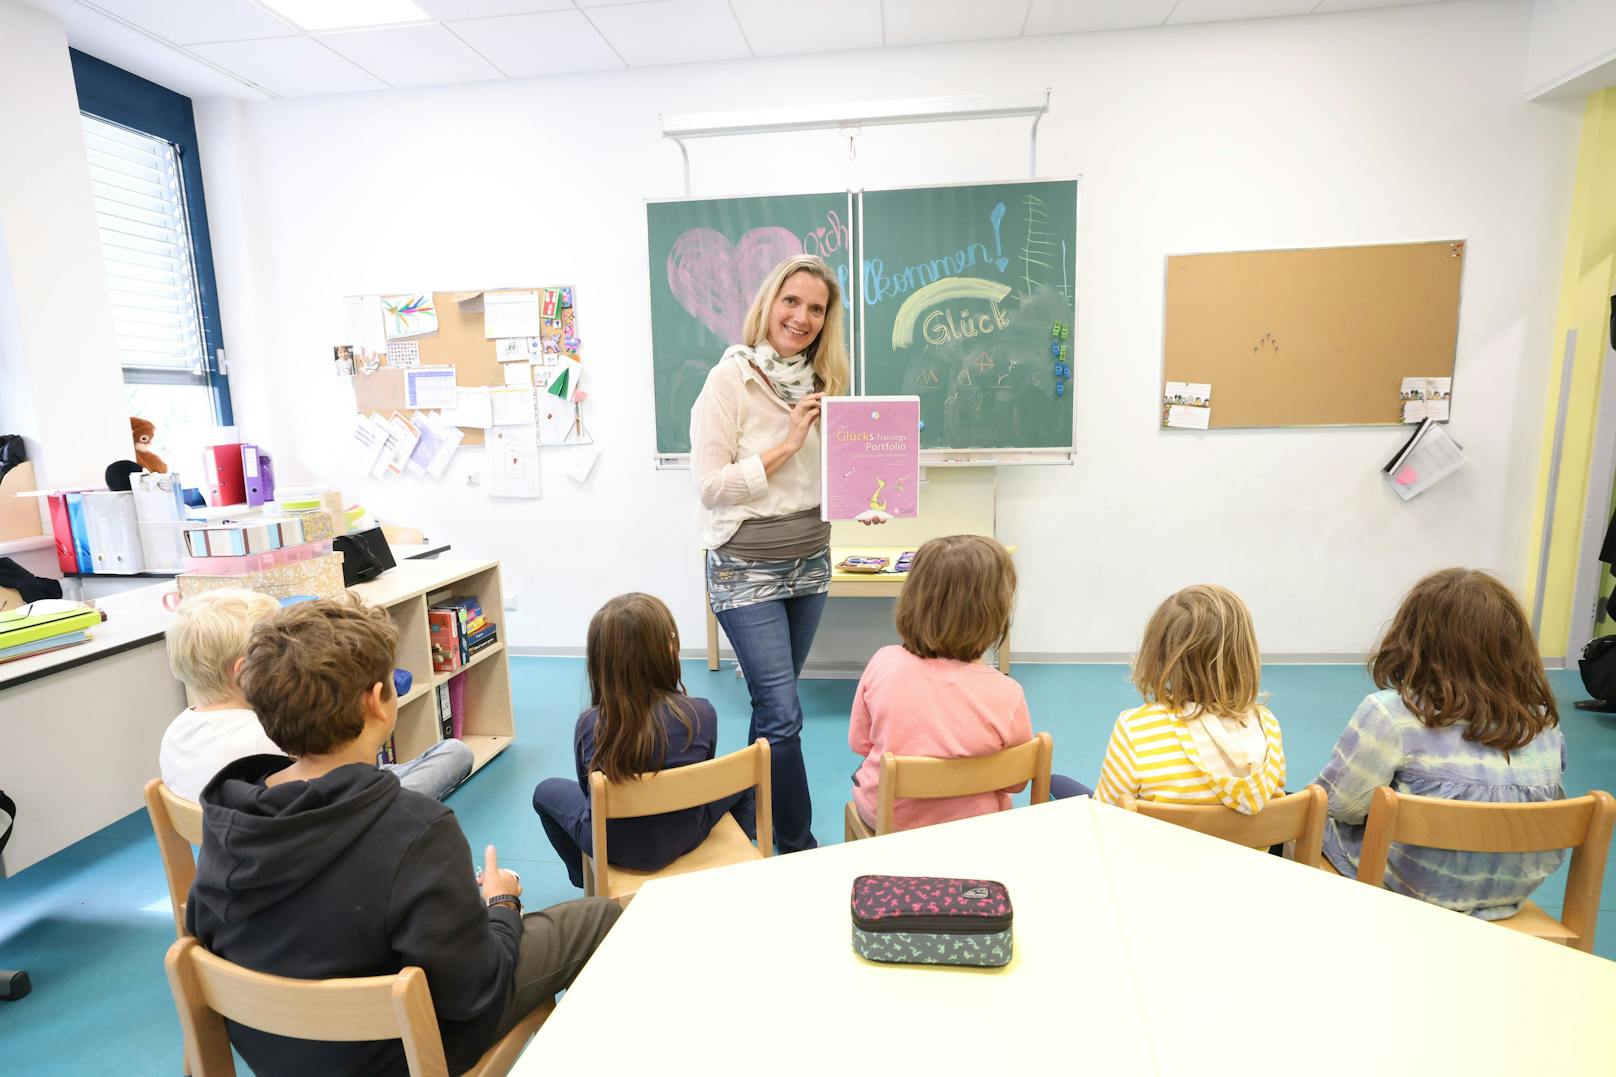 In den Wiener Volksschulen Friedrichsplatz und Lerngemeinschaft 15 wir Glück gelehrt, wie in der Klasse von Karin Märzinger (Mitte).